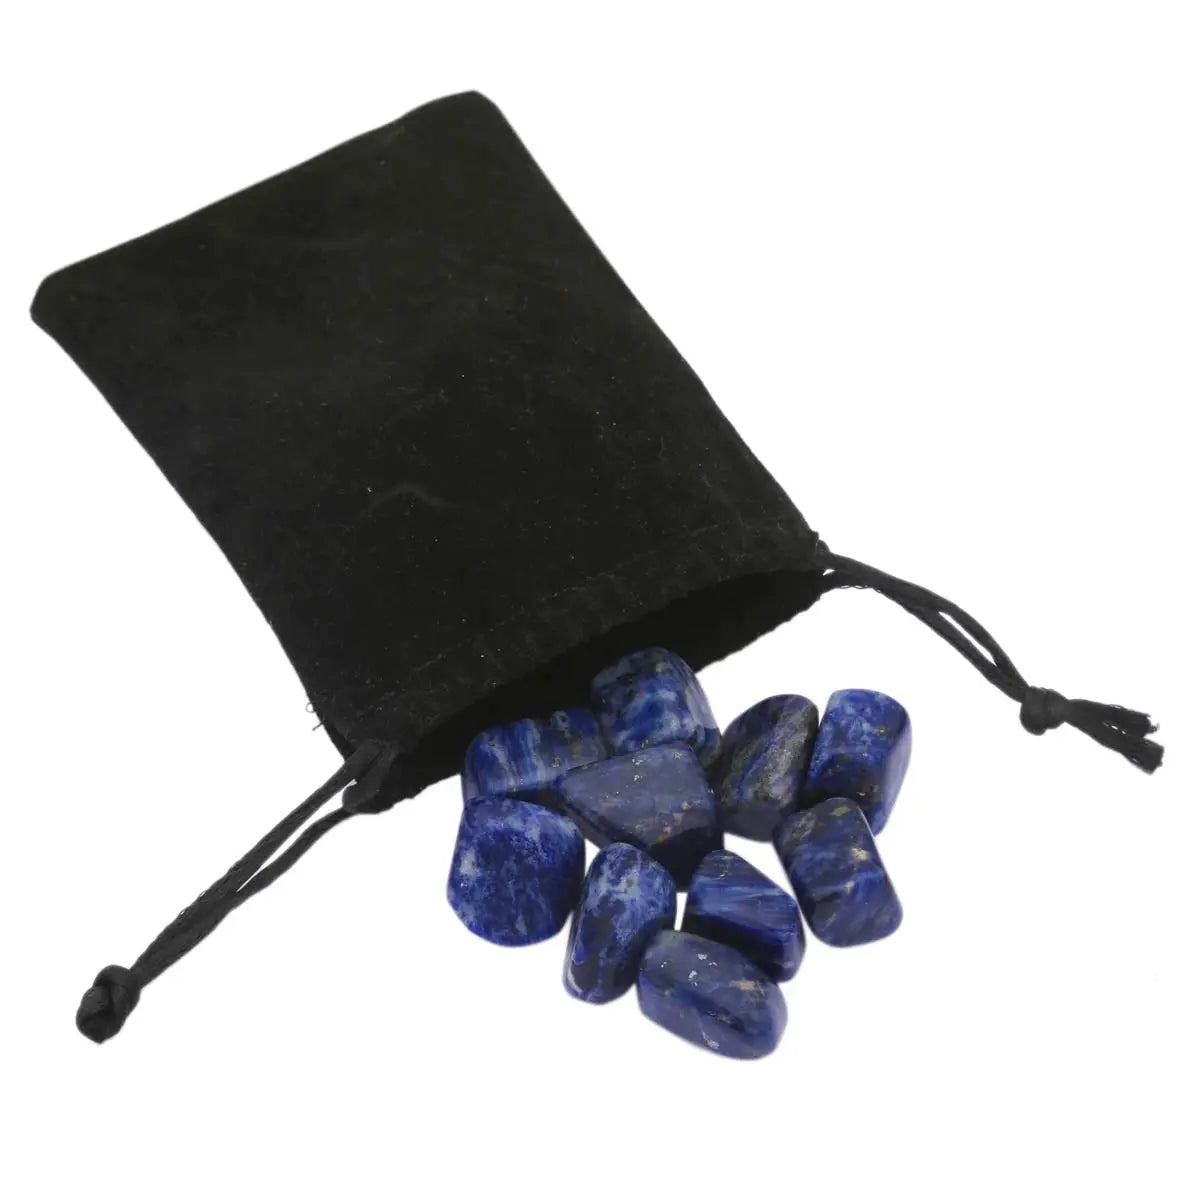 Sodalite - Chakra Crystals Healing Stones Healing Crystal Home